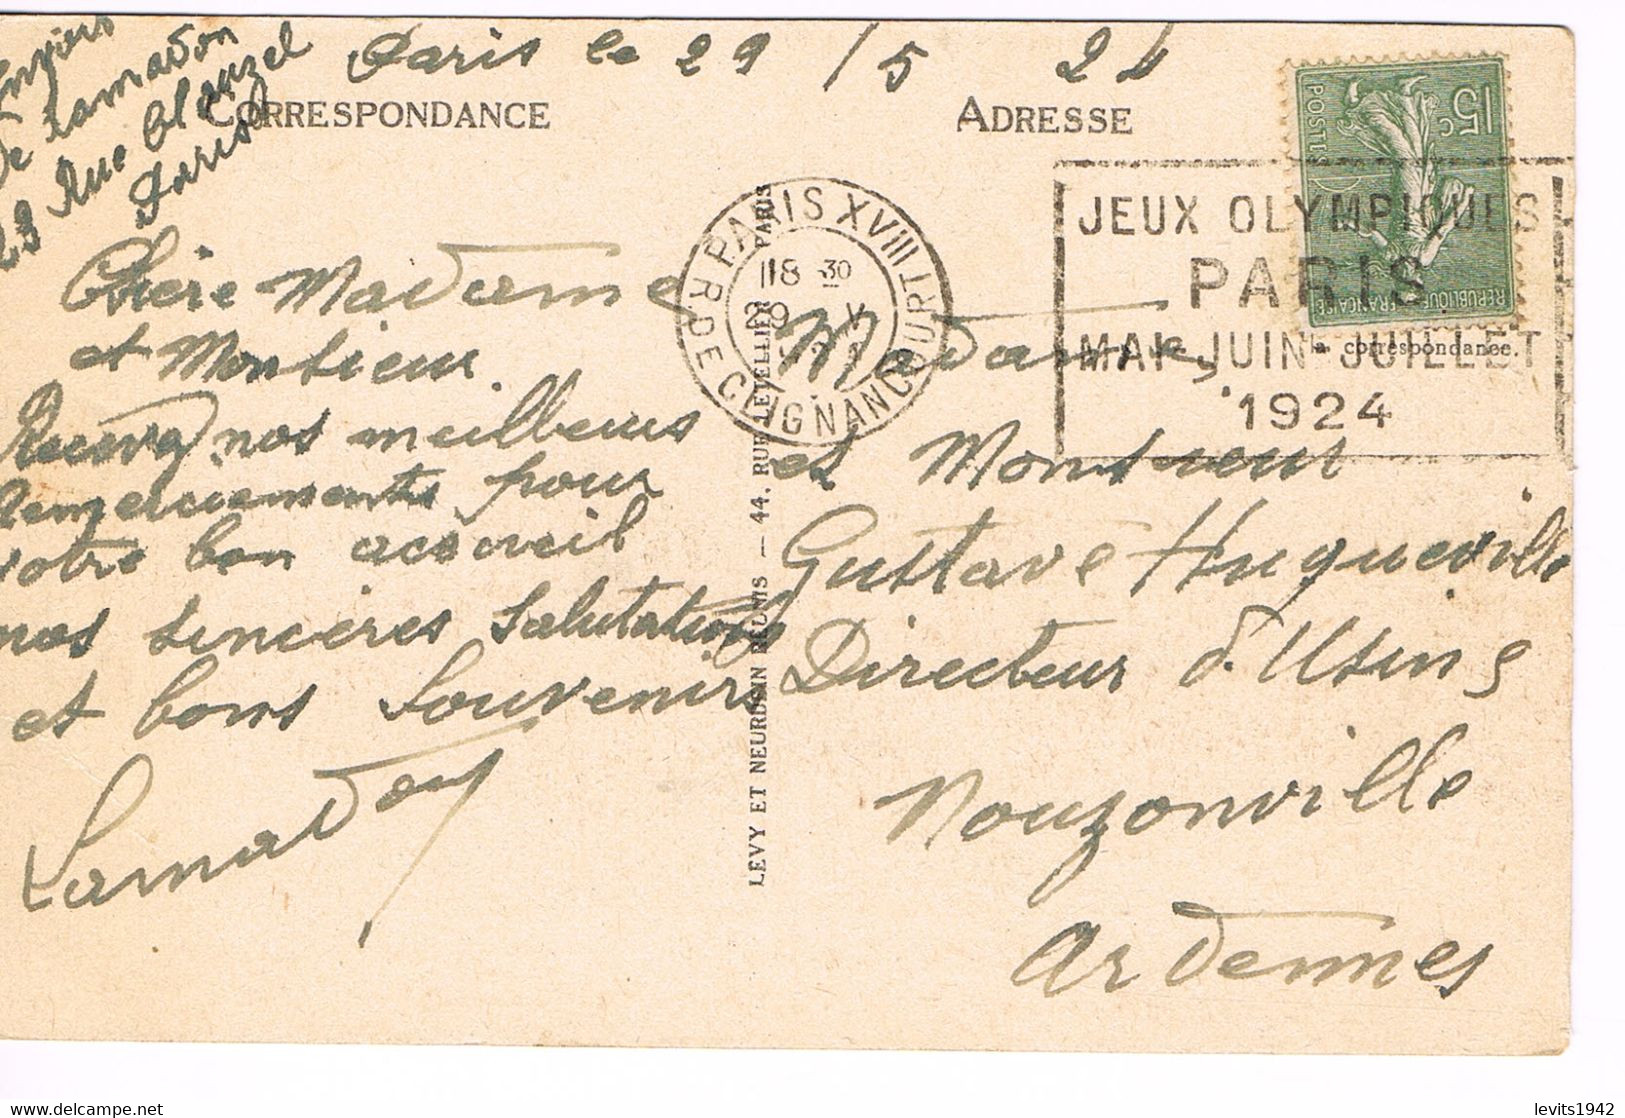 JEUX OLYMPIQUES 1924 -  MARQUE POSTALE - FOOTBALL - 1/8 ème FINALE - JOUR DE COMPETITION - 29-05 - - Summer 1924: Paris